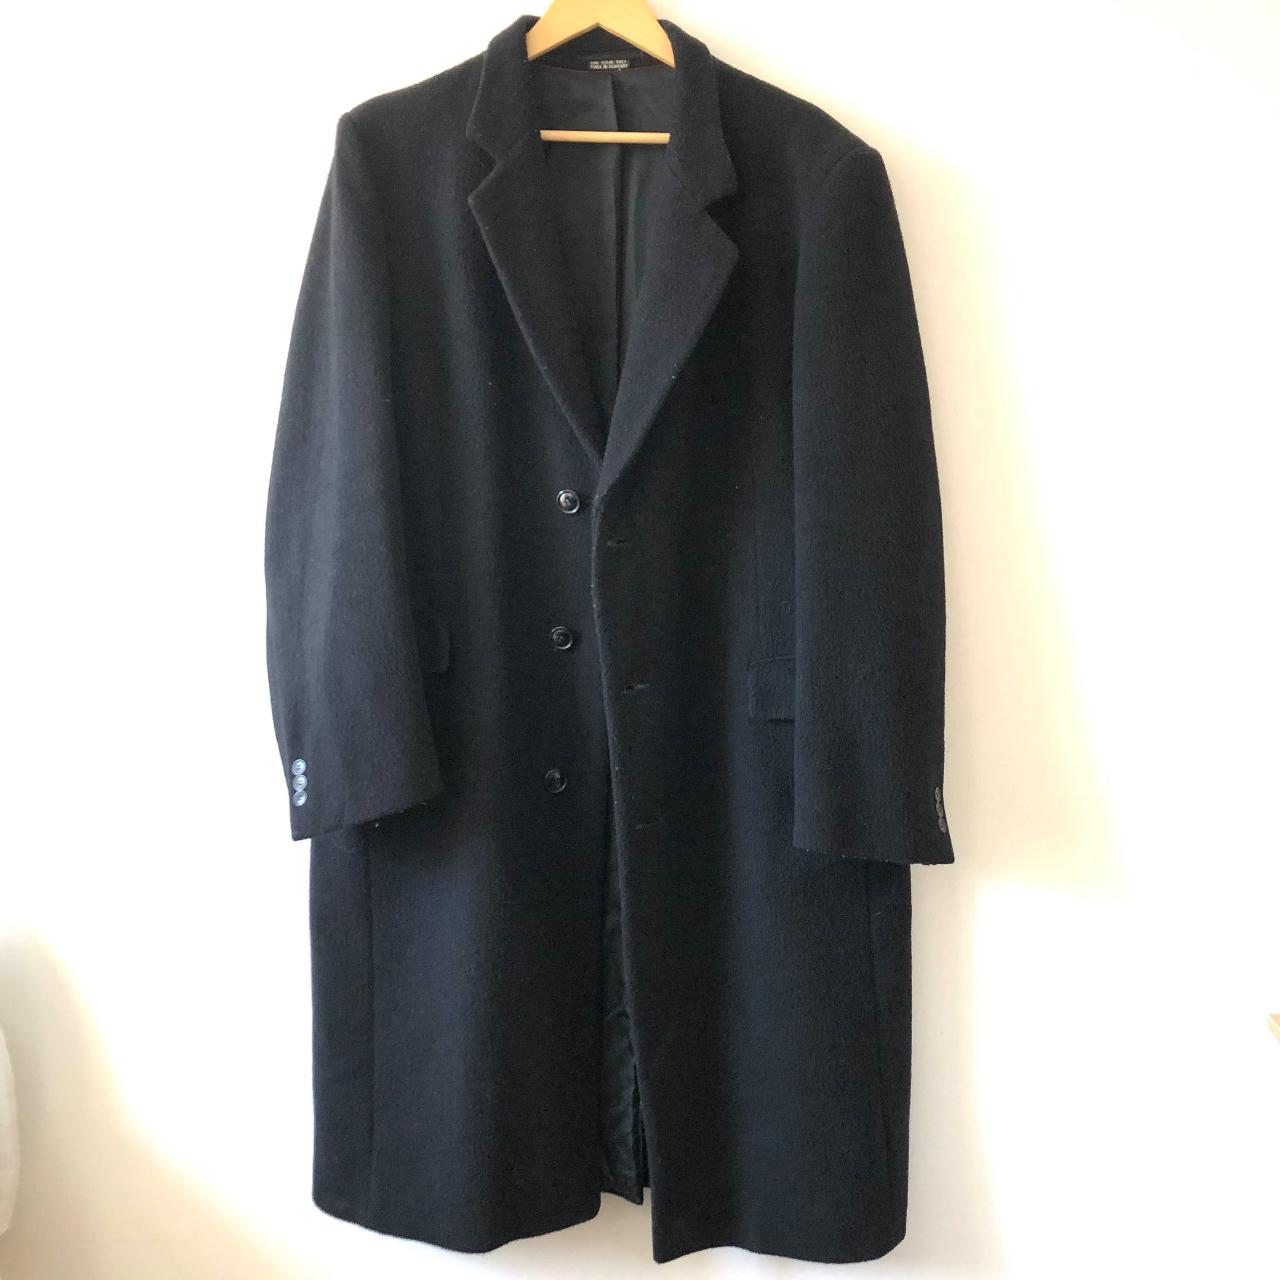 Vintage Teller Cashmere Coat Long Black Coat Size... - Depop